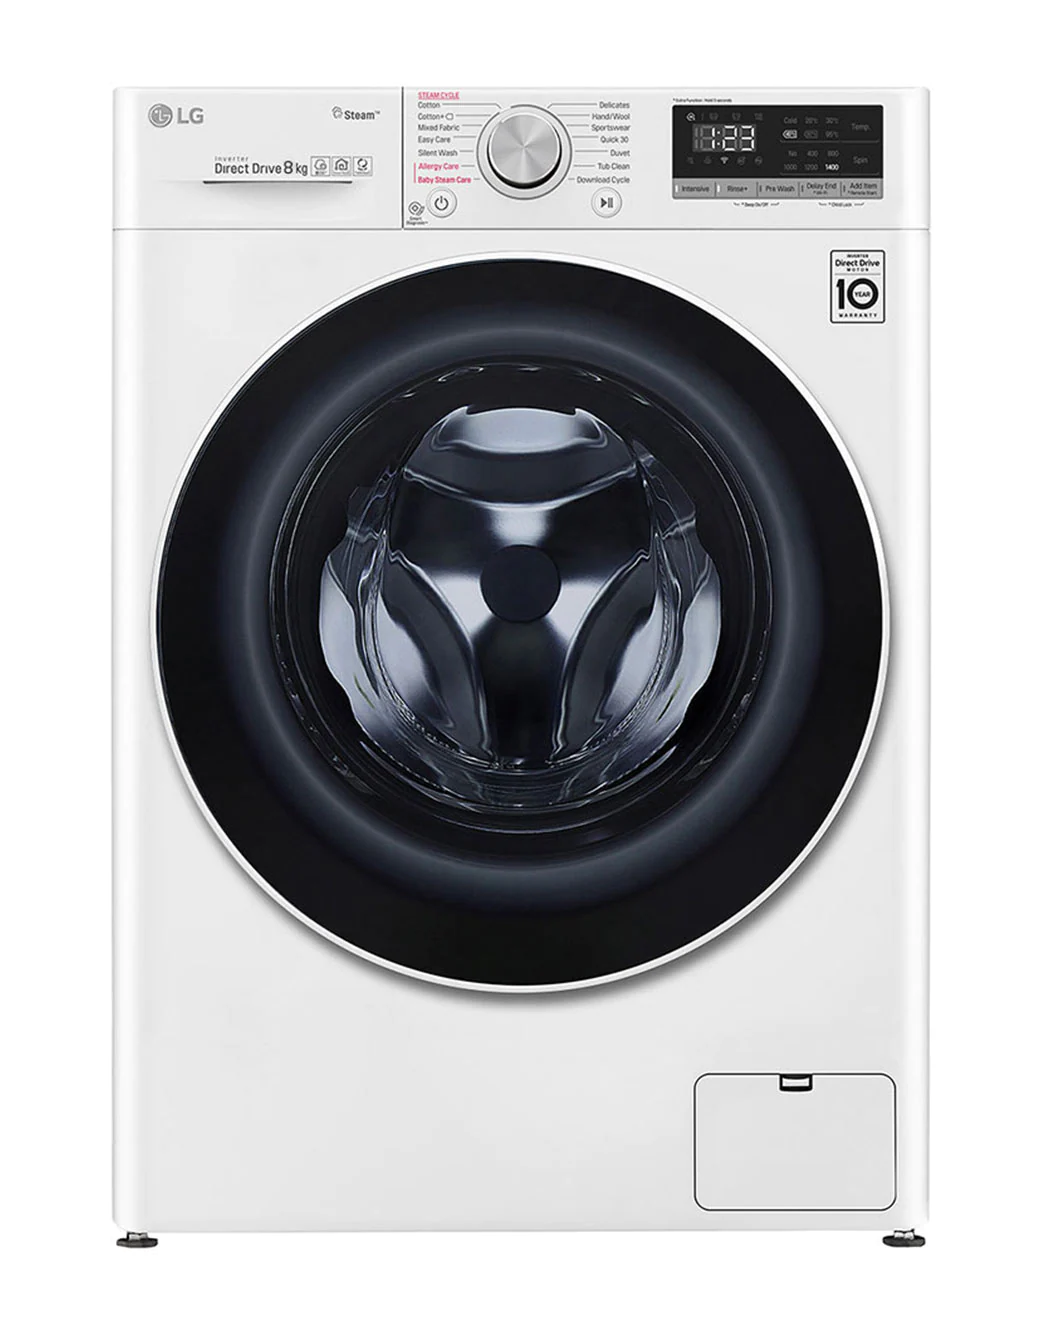 LG 8kg, AI Washing | Front LG Direct Nepal Machine Drive Load